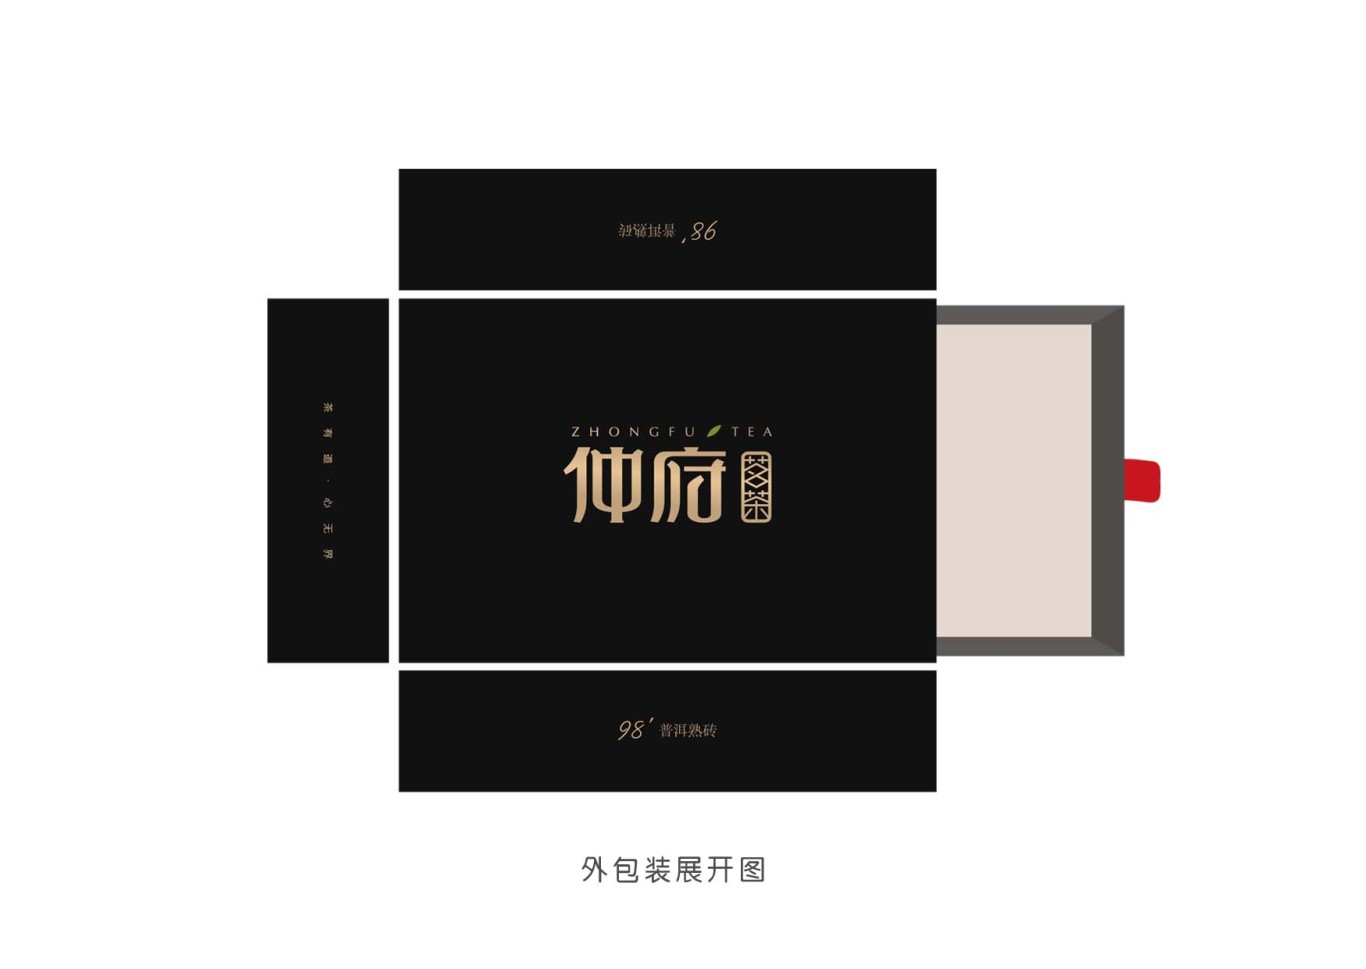 仲府茗茶 高端茶业品牌形象设计图30